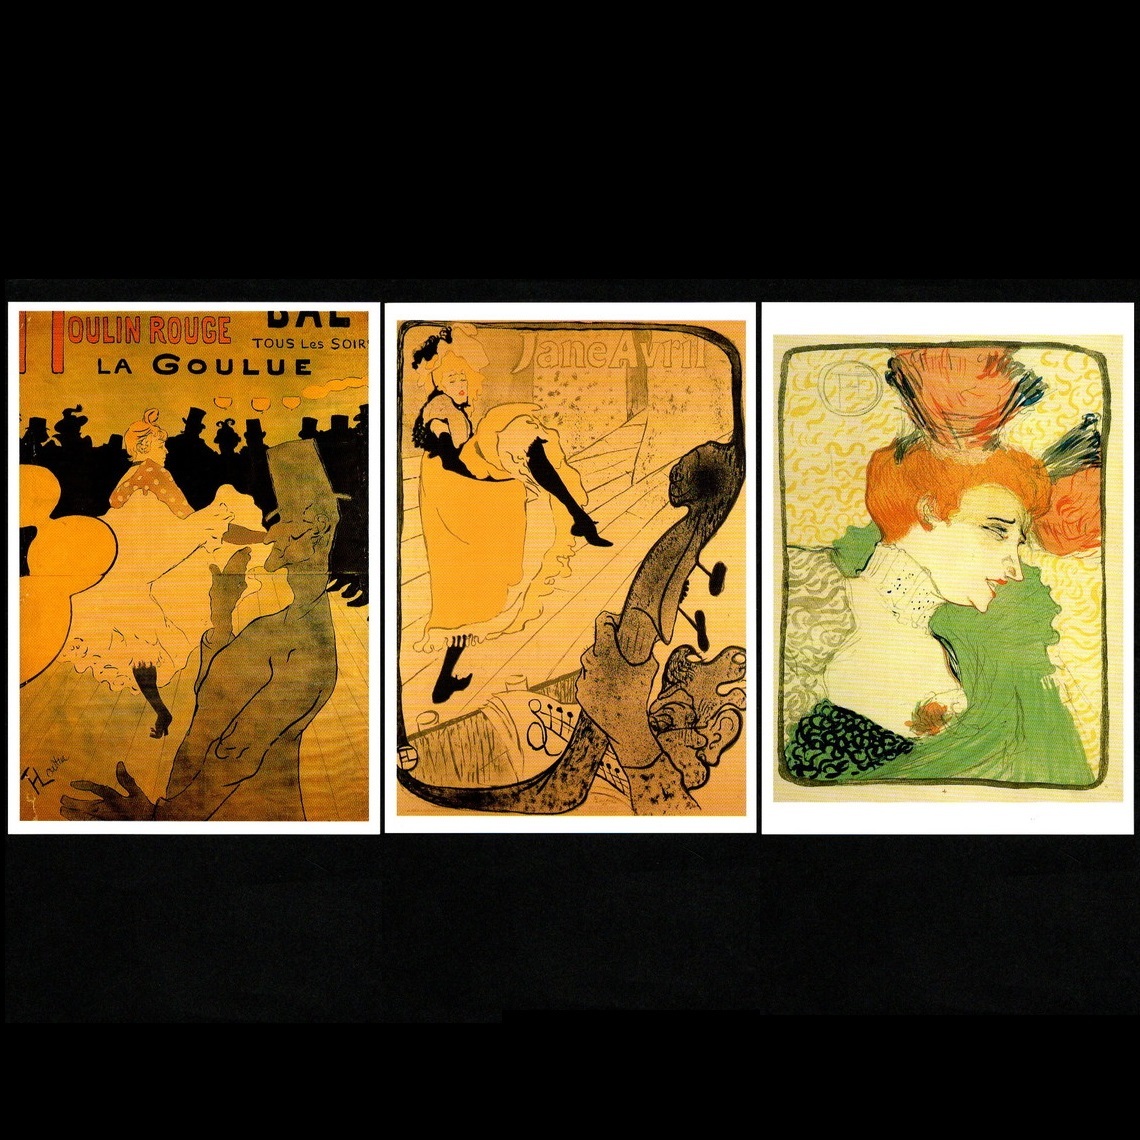 明信片艺术展 图卢兹-罗特列克展览：逝世 100 周年 图卢兹-罗特列克 2000 红磨坊绘画明信片 3 套, 印刷材料, 明信片, 明信片, 其他的